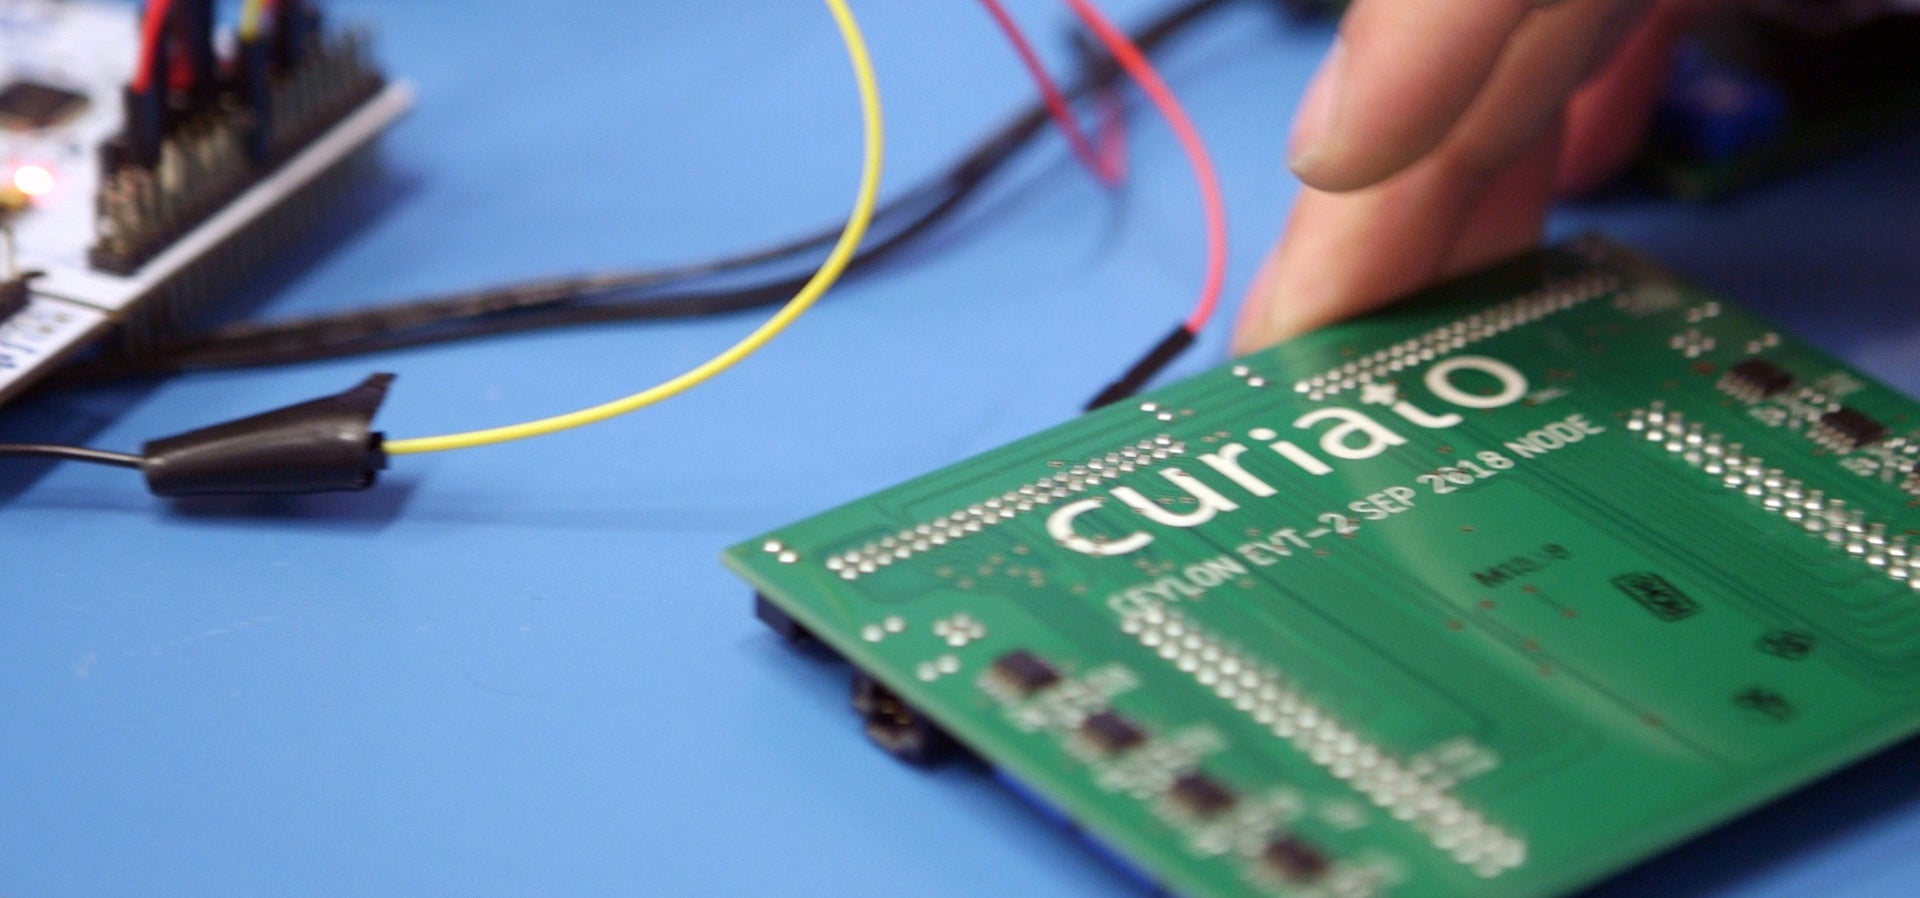 Curiato's green circuit board